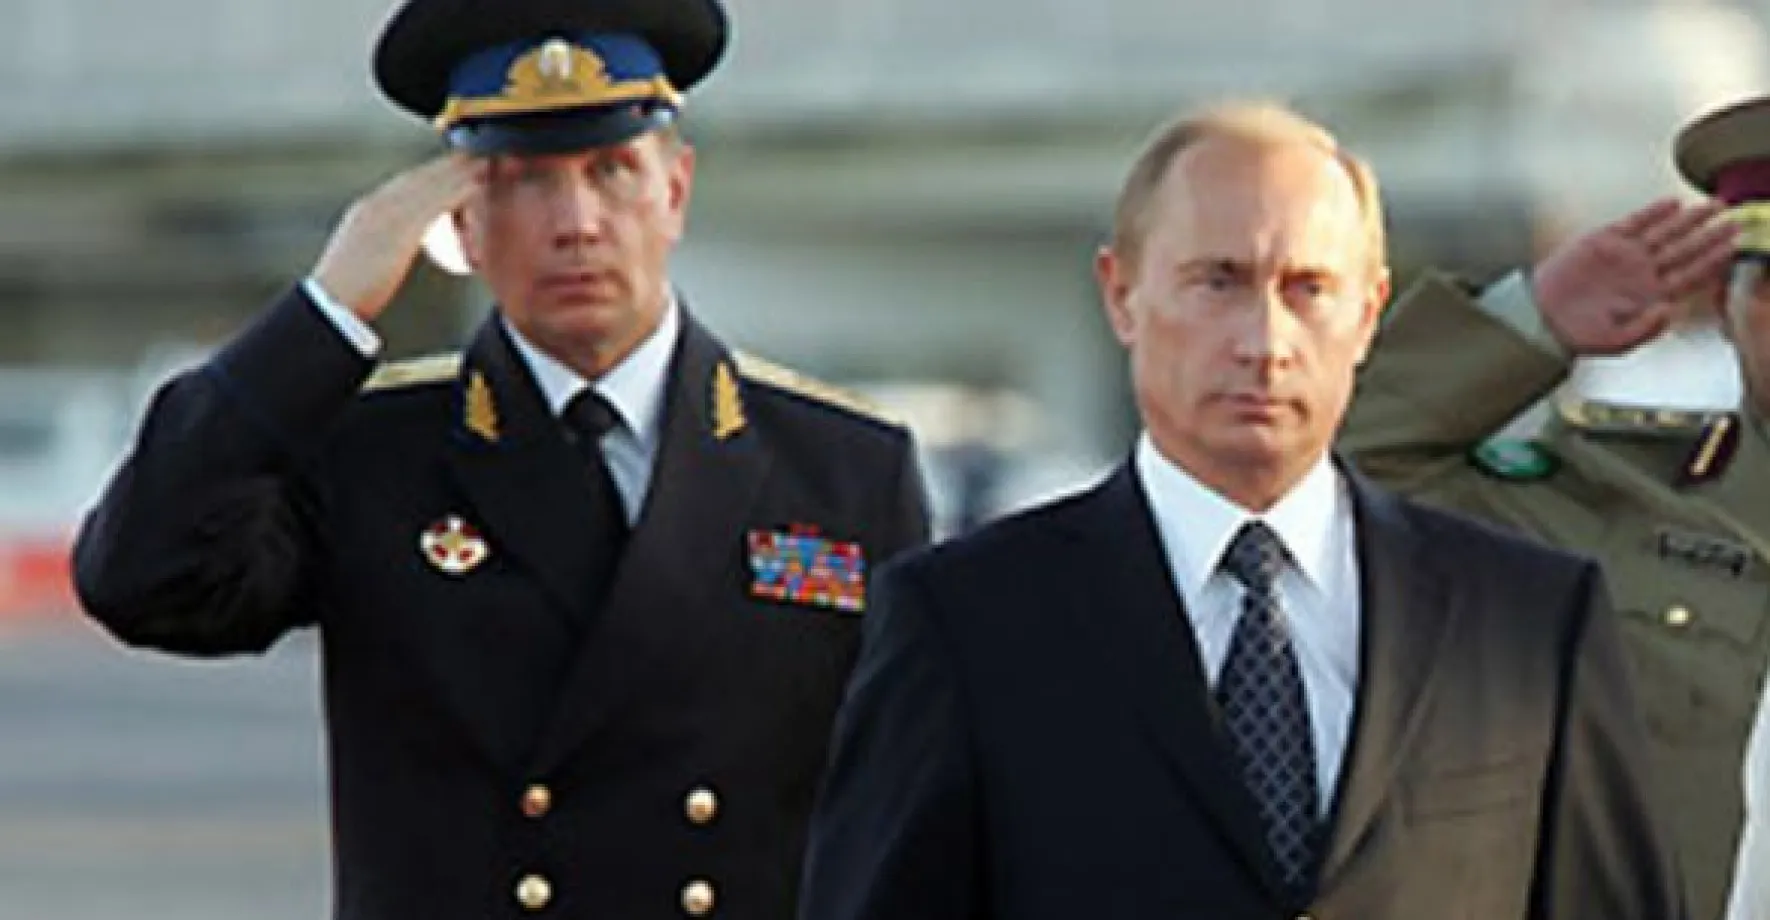 Co se děje v Kremlu? Přijde oznámení. Putin zemřel, je otec, zabili generála...